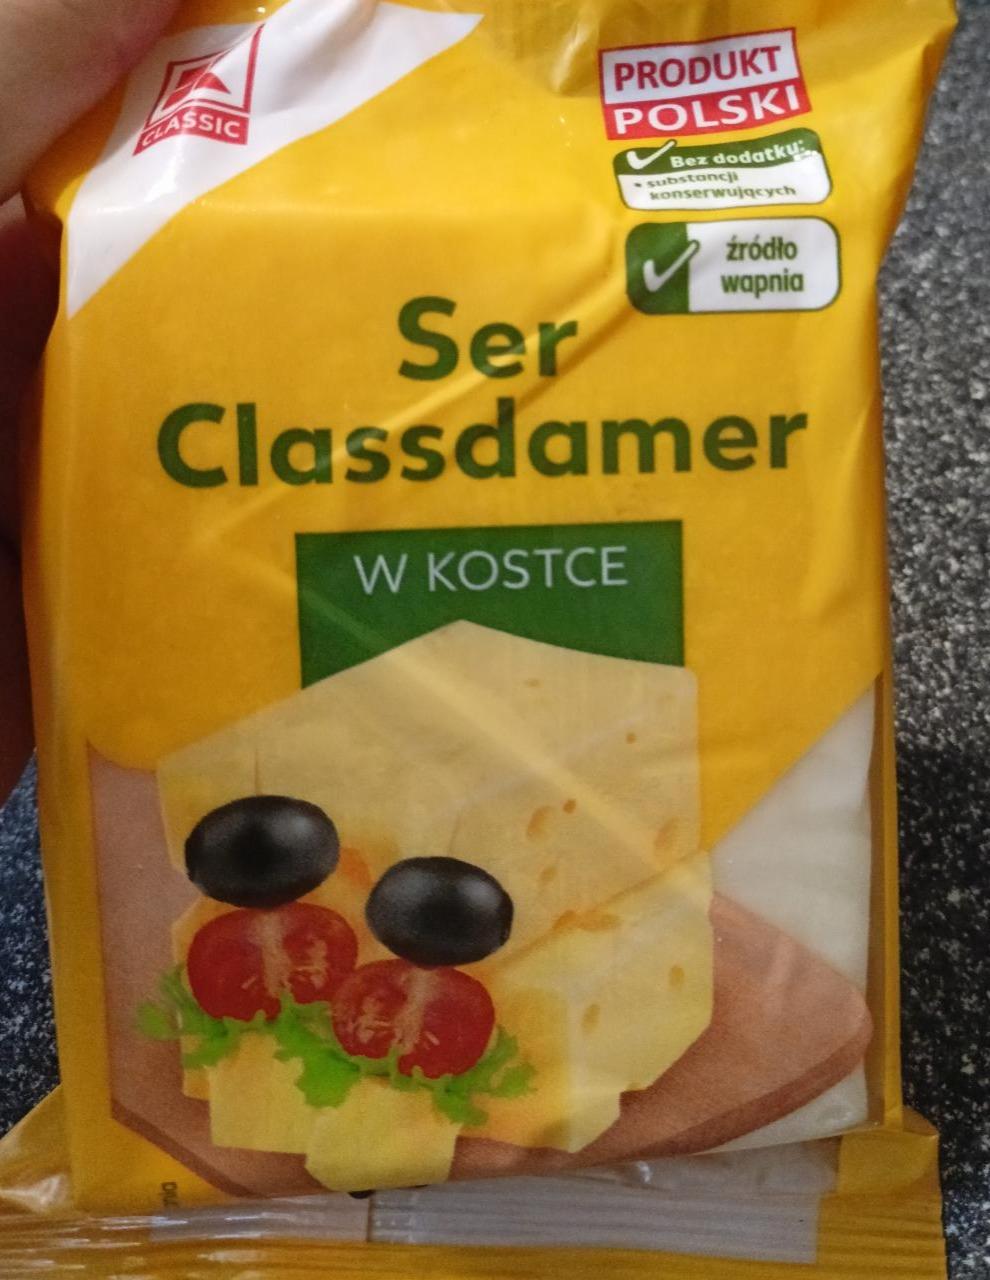 Zdjęcia - Ser Classdamer w kostce K-Classic